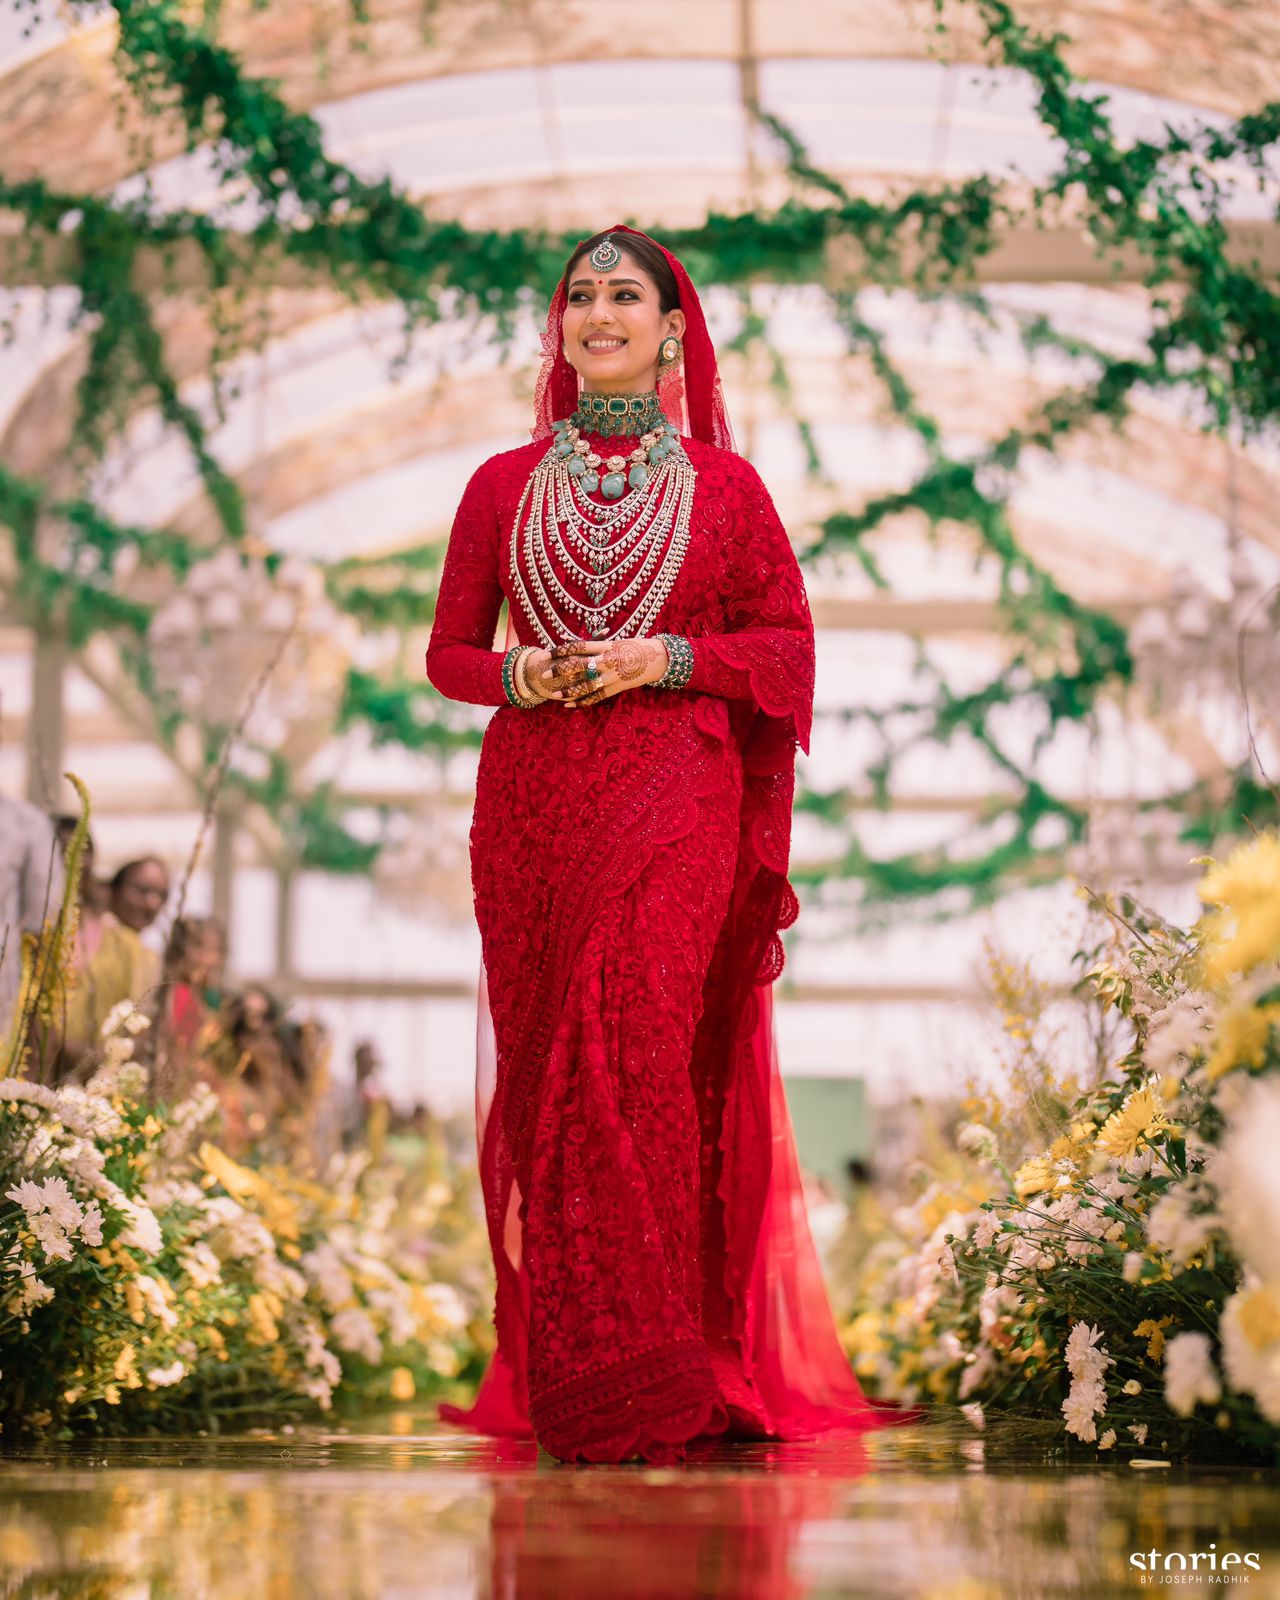 Vignesh Shivan Nayanthara marriage wedding dress details